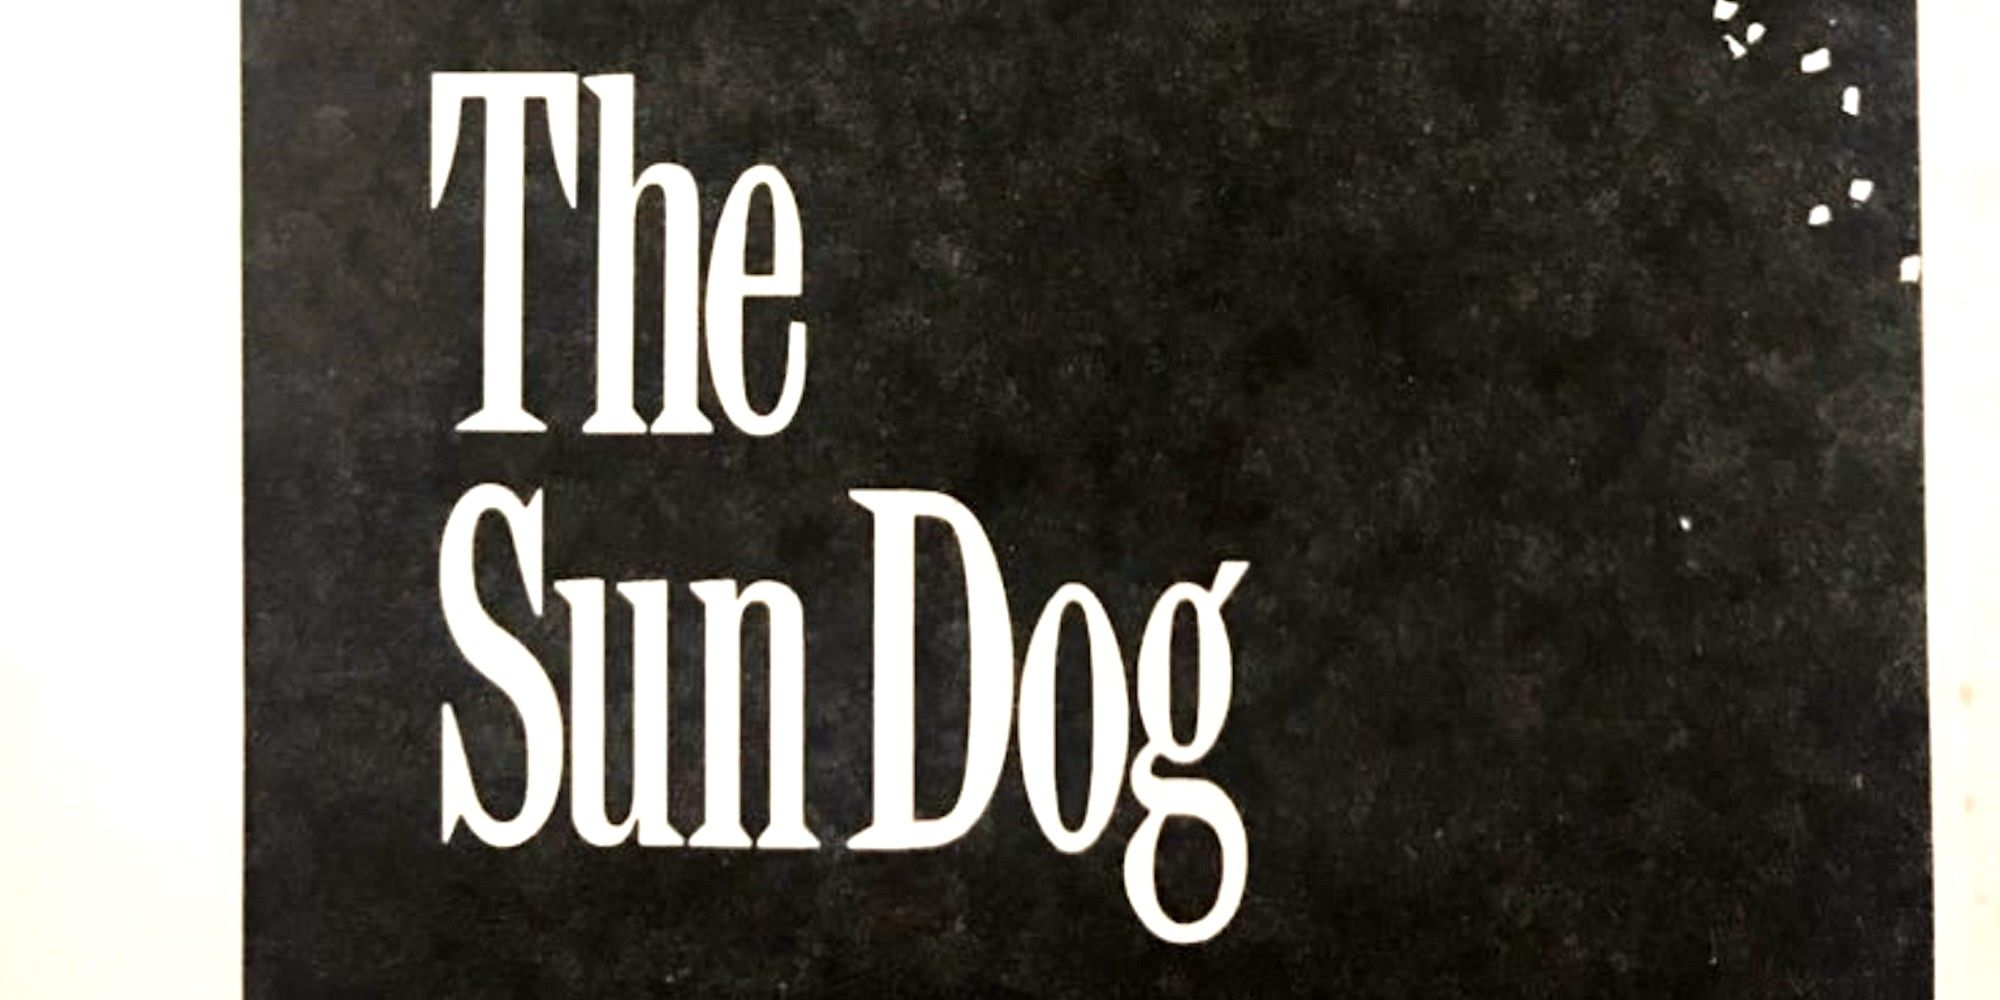 Stephen King's The Sun Dog